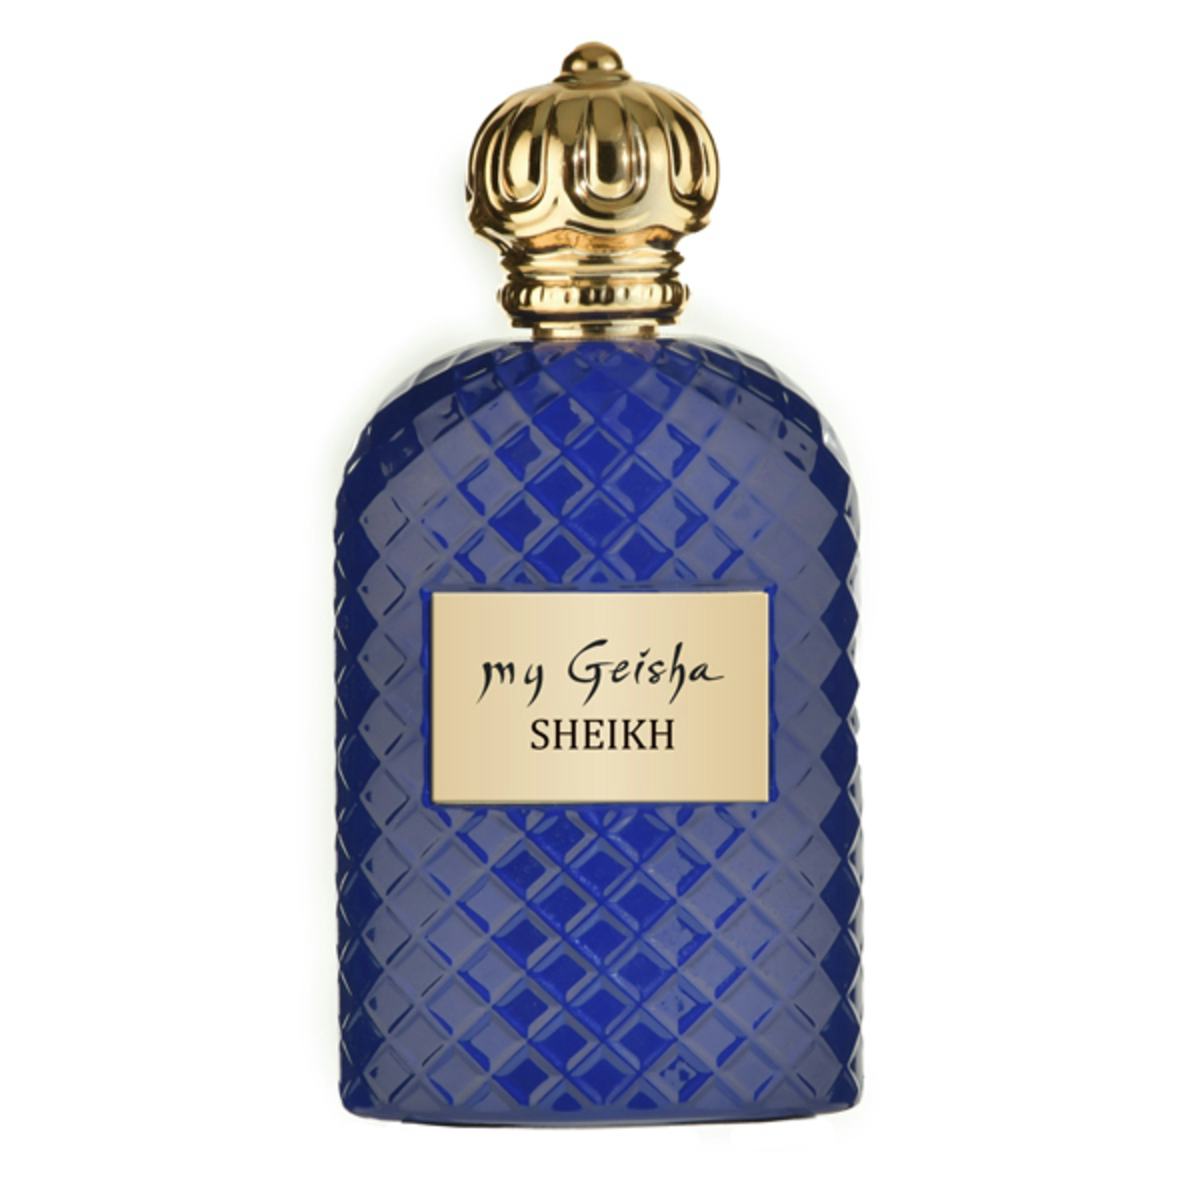 Extrait de parfum SHEIKH 100 ml, handwerkliches Produkt für den Direktverkauf in der Schweiz